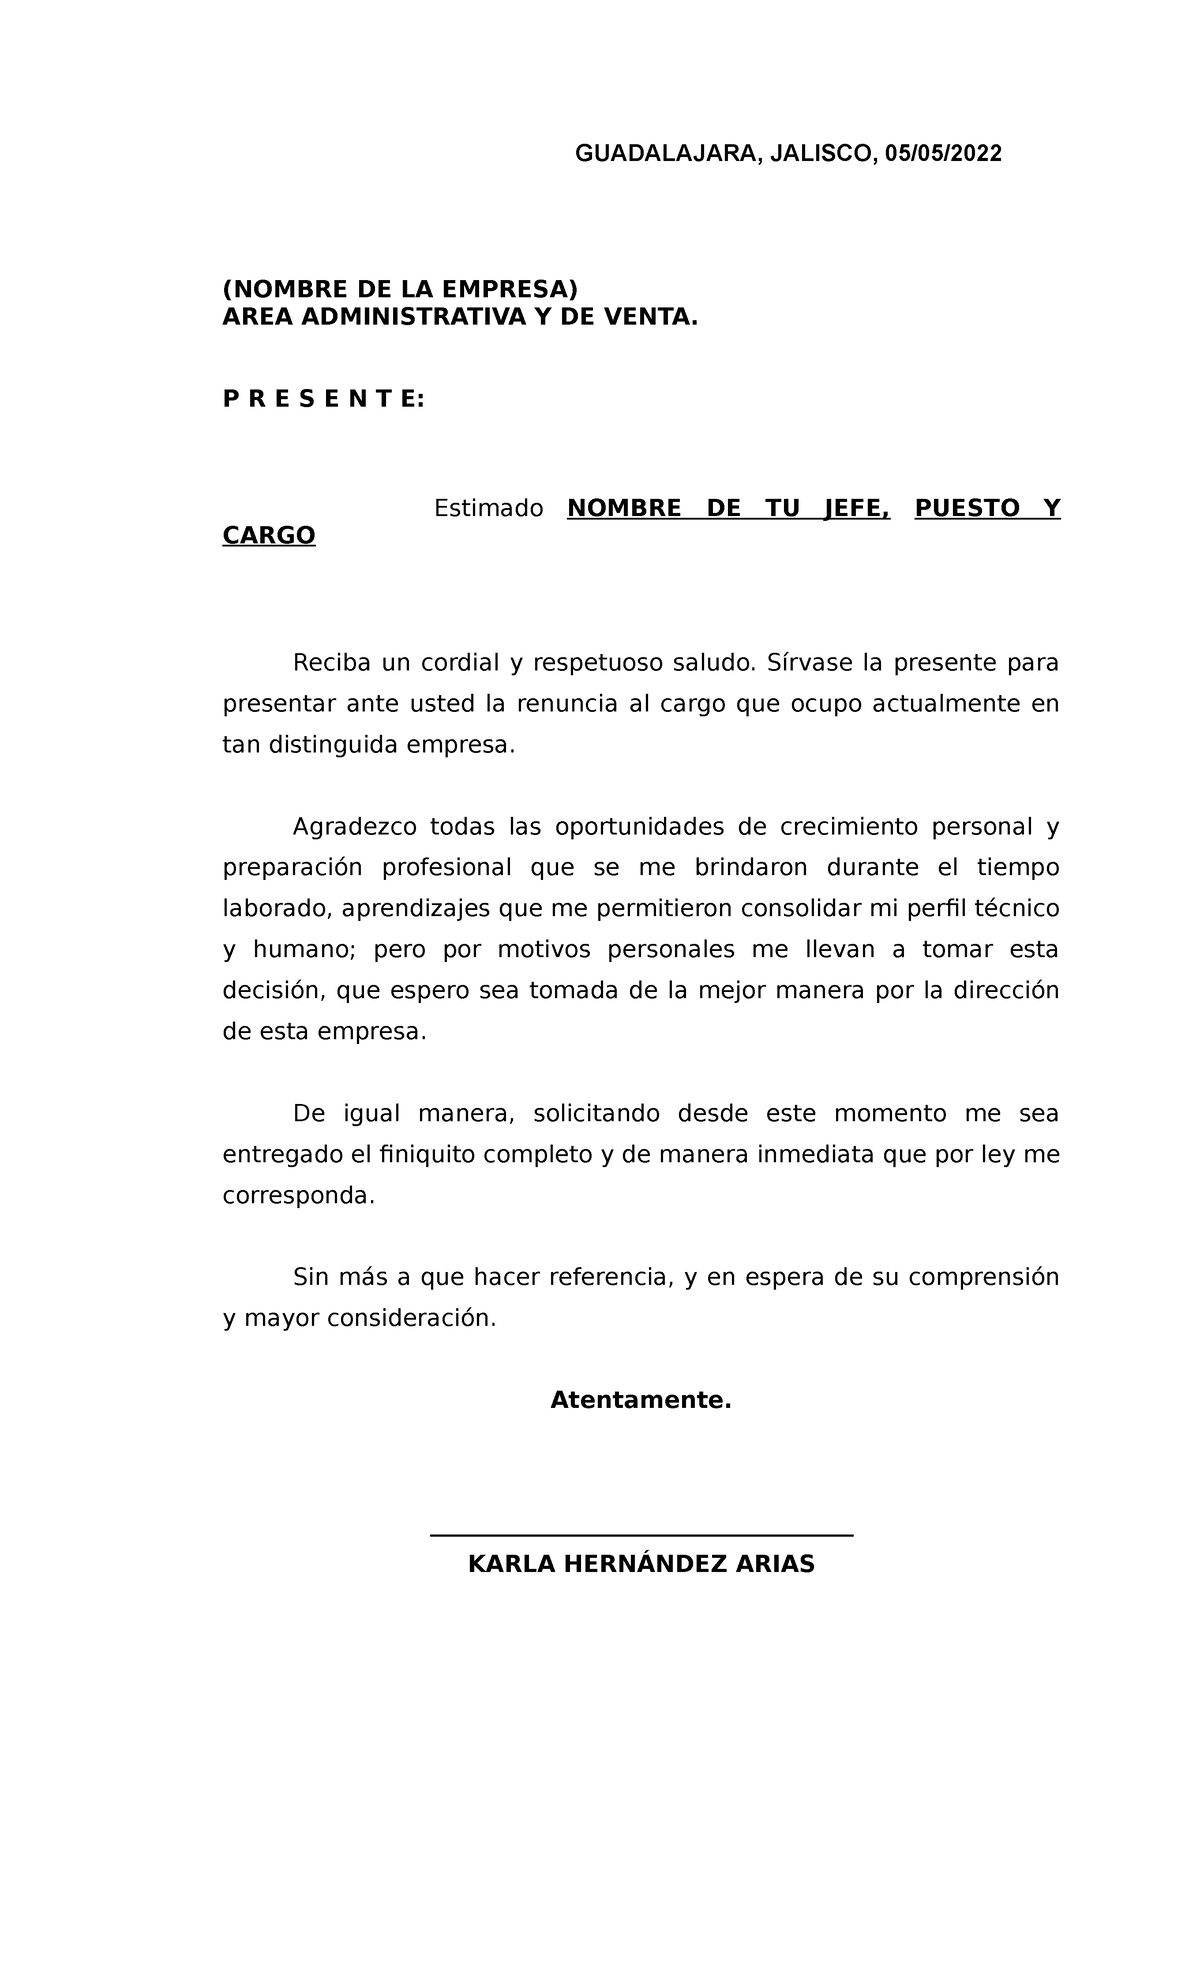 Formato renuncia voluntaria con solicitud de finiquito - GUADALAJARA,  JALISCO, 05/05/ (NOMBRE DE LA - Studocu